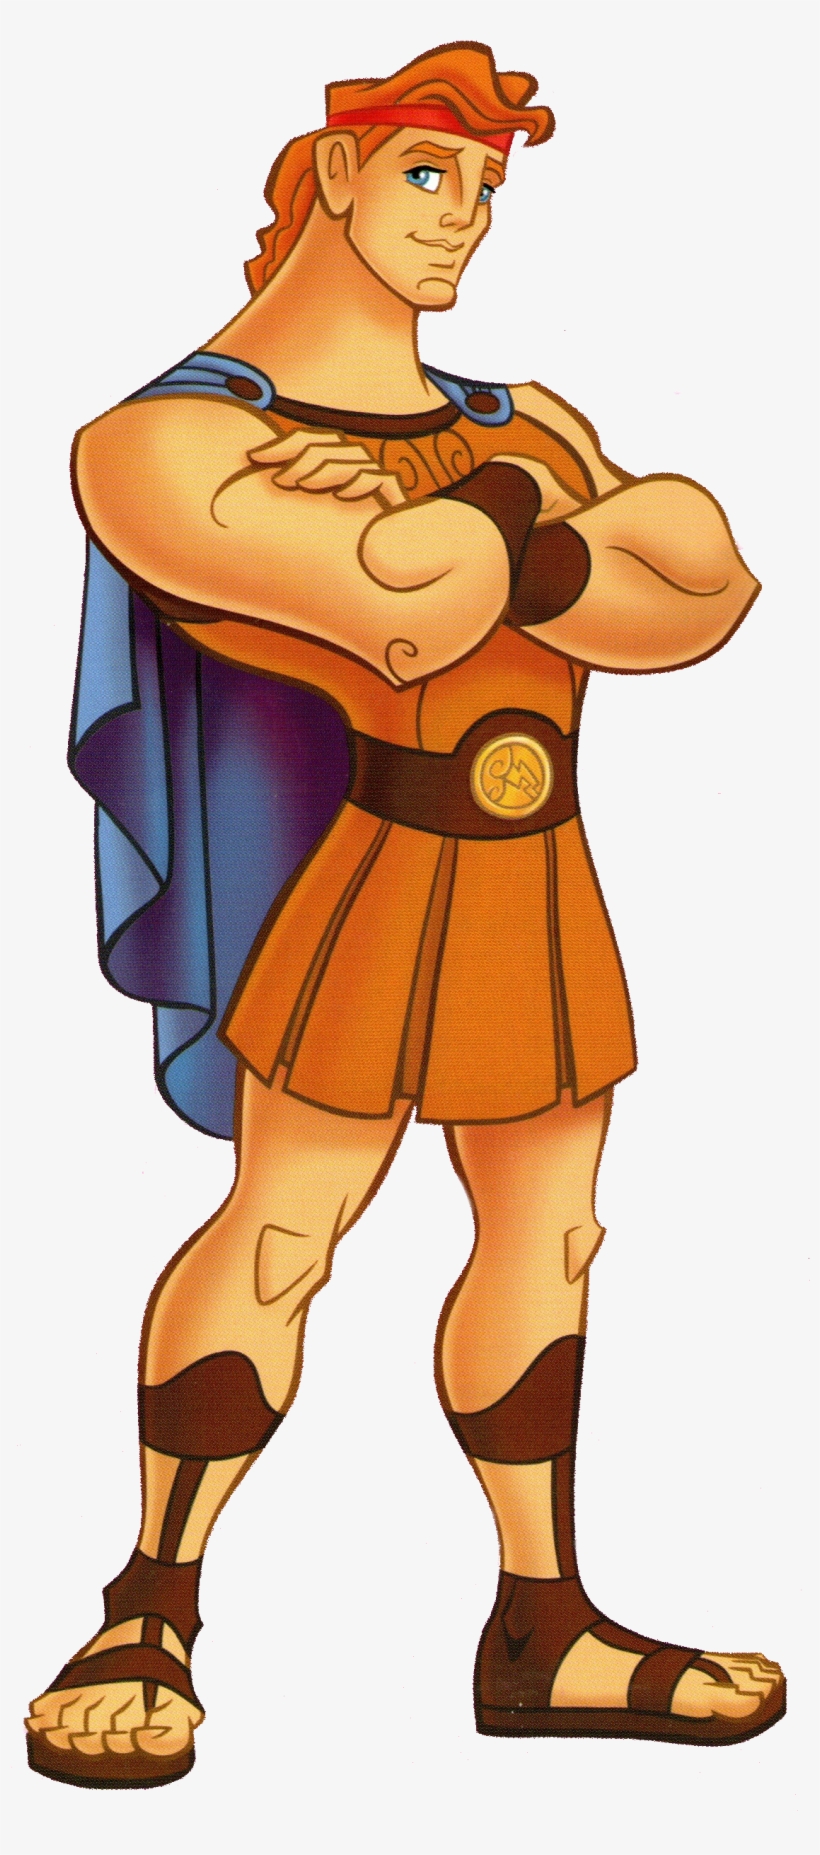 My Favorite Disney Hero Is Hercules - Hercules Disney, transparent png #978867